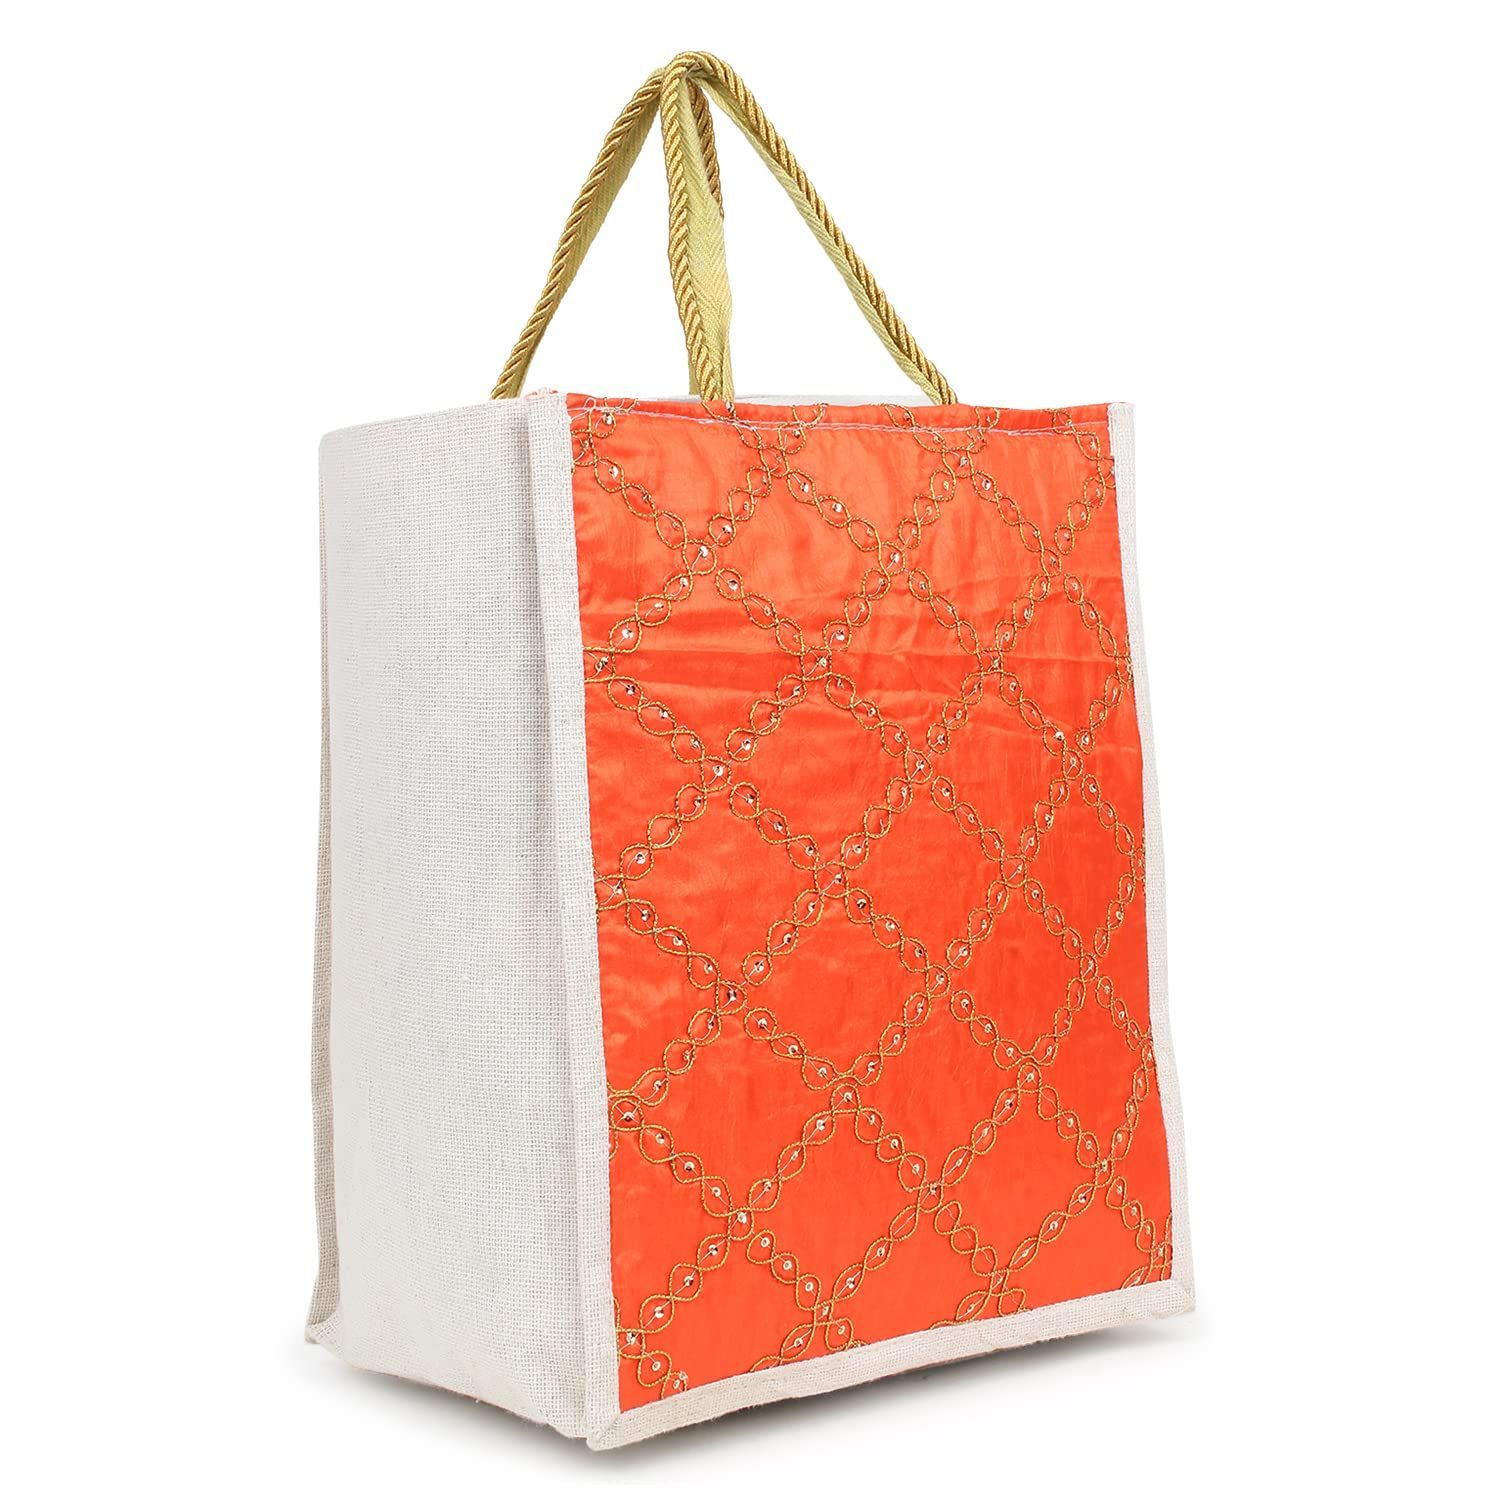 KSI Designer Women Jute Bag for Lunch Box | Shopping � Jute Handbag, Jute Tote, Jute Lunch Bags for Office, Tiffin Bags for Office, Printed Jute Bag